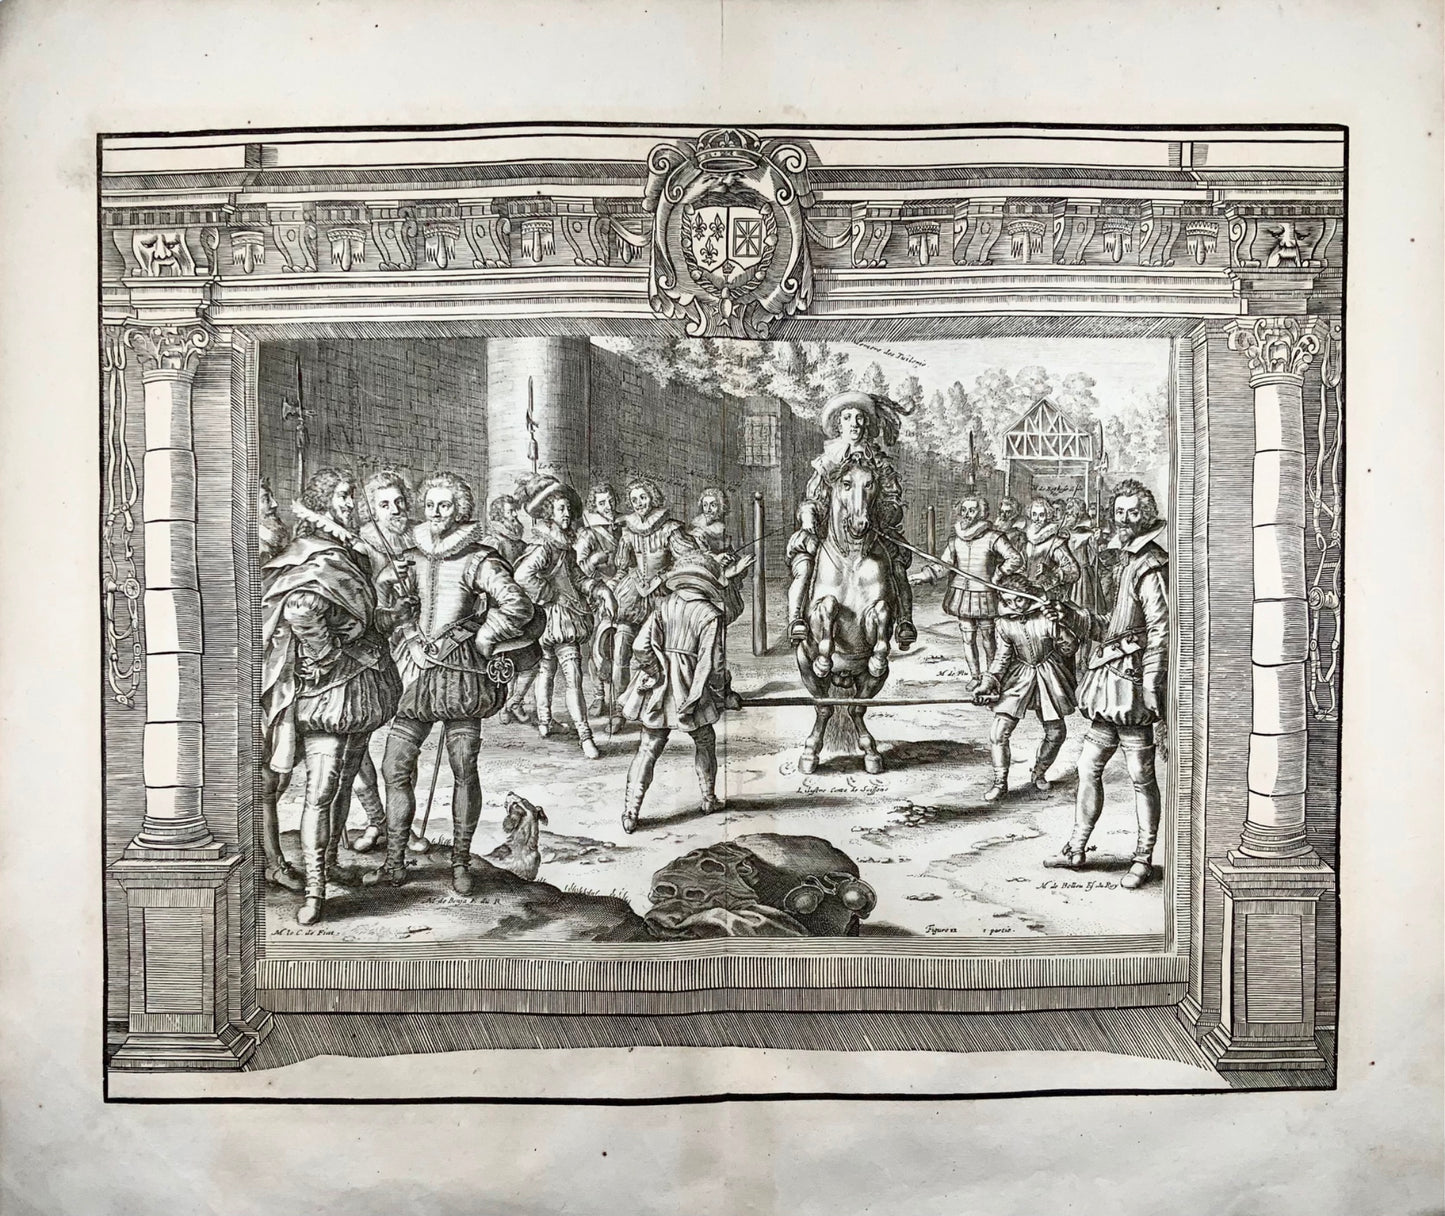 1668 Crispijn de Passe II, équitation, équitation, dressage, équitation, sport